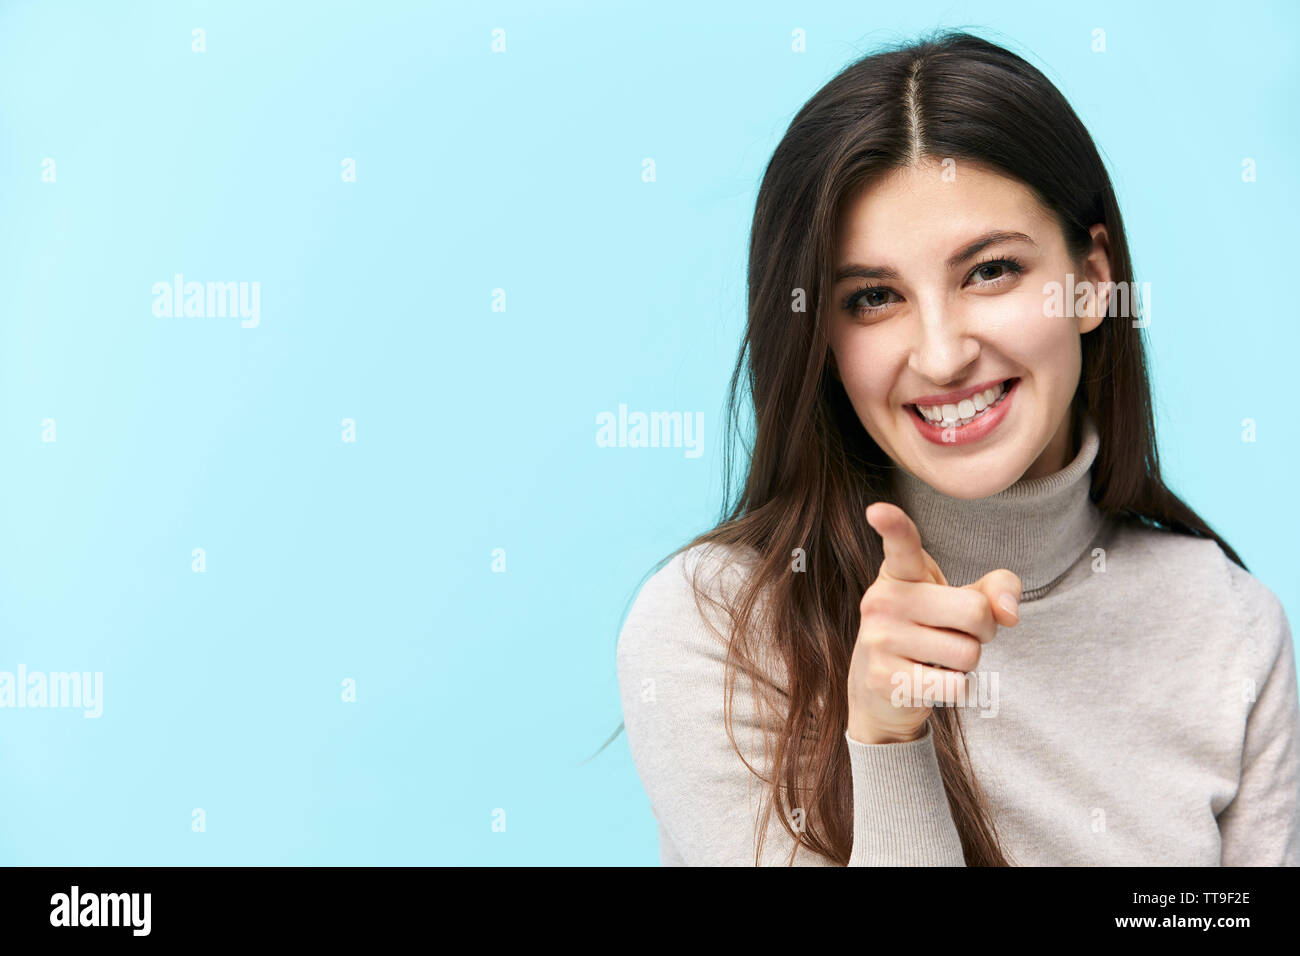 Bellissima giovane donna caucasica puntando alla fotocamera con un dito, felice e sorridente, isolato su sfondo blu Foto Stock